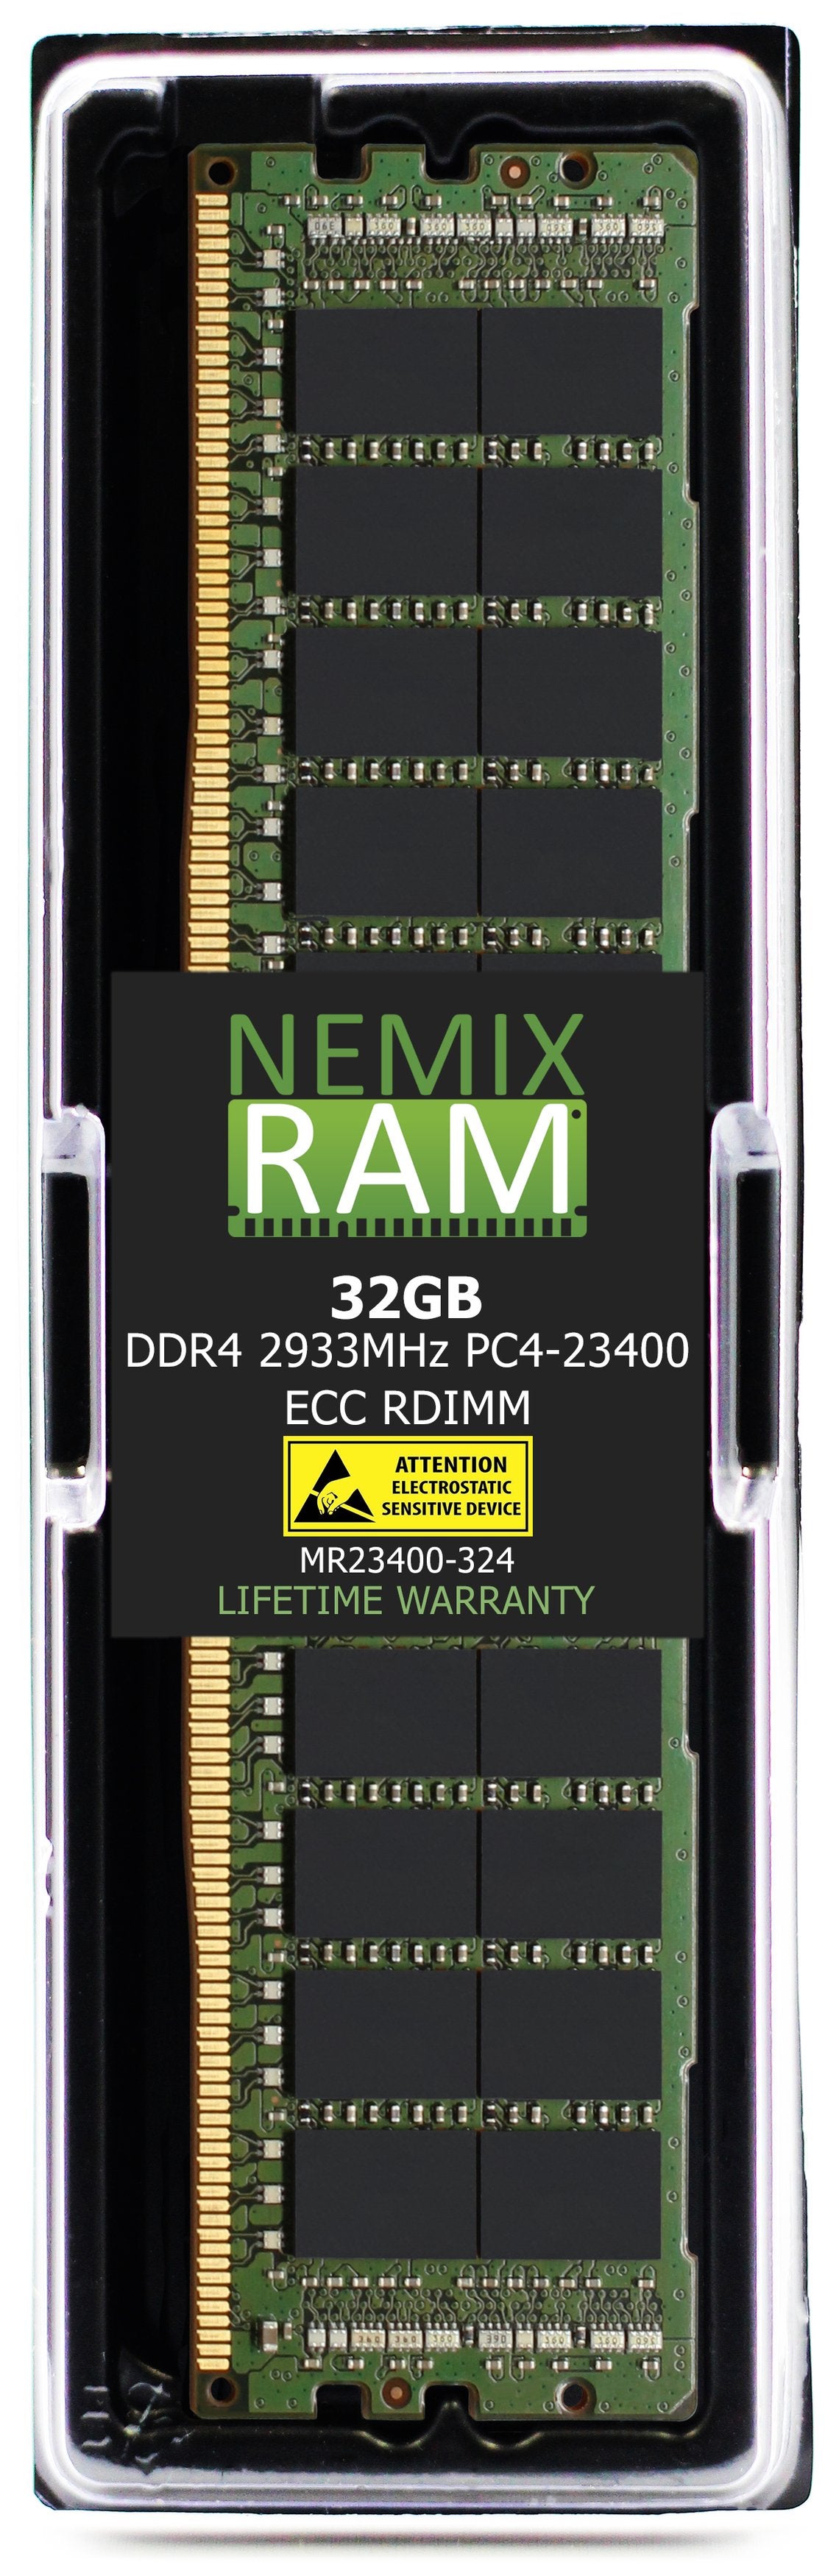 32GB DDR4 2933MHZ PC4-23400 RDIMM Compatible with Supermicro MEM-DR432L-CL01-ER29